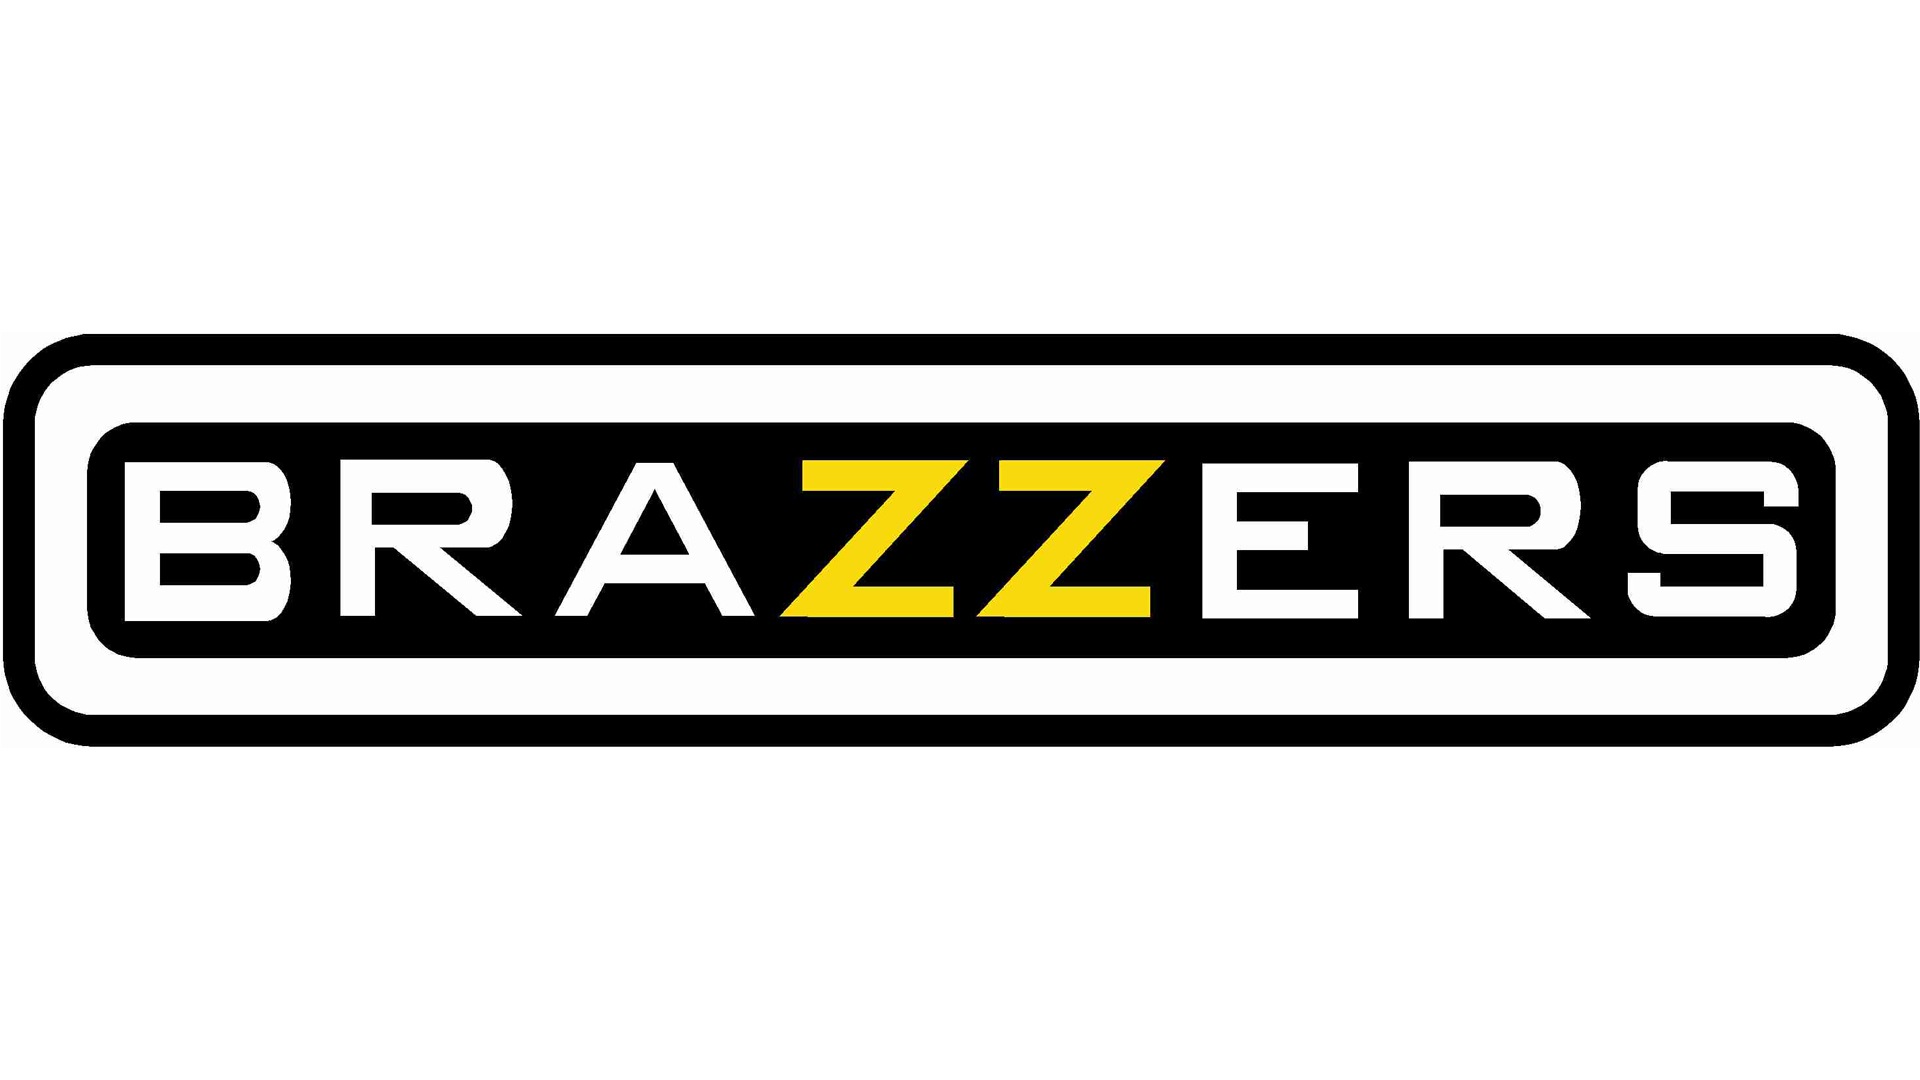 Brazzers logo histoire, signification et évolution, symbole